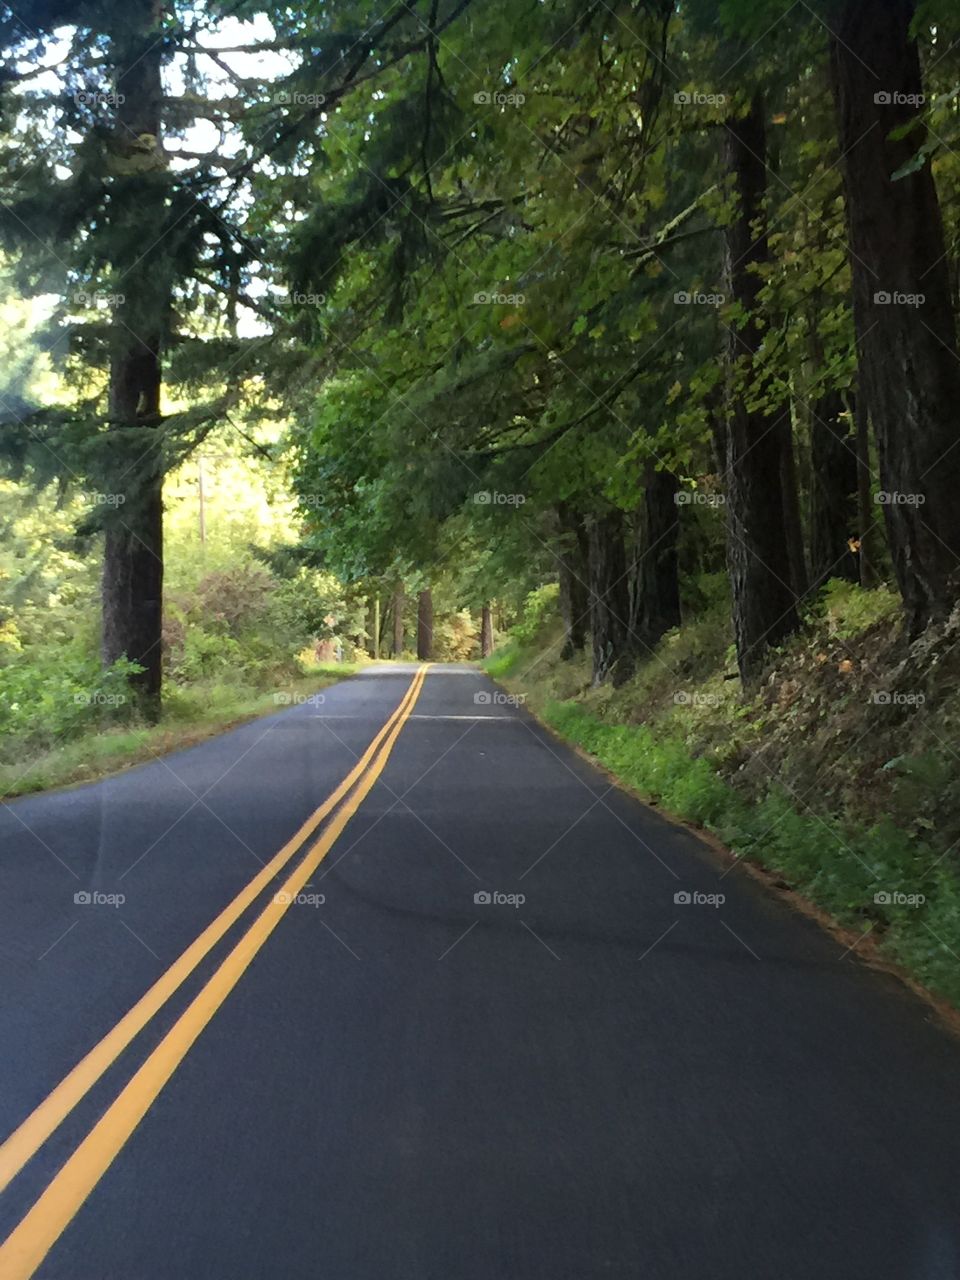 Road along Columbia River, Oregon